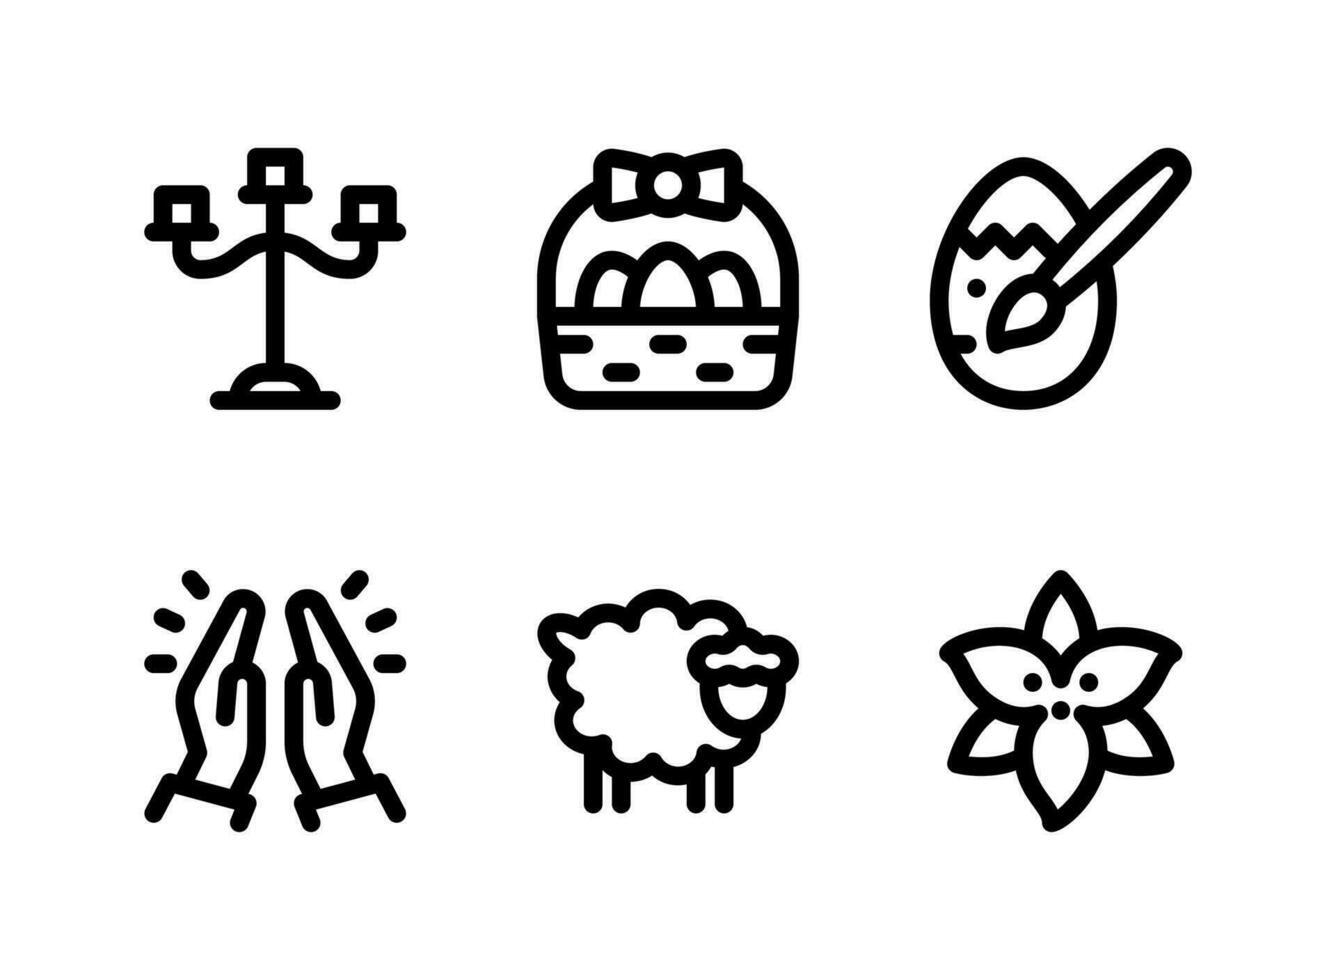 semplice set di icone solide vettoriali relative a Pasqua. contiene icone come candelabri, cesto pasquale, uovo dipinto, preghiere e altro ancora.